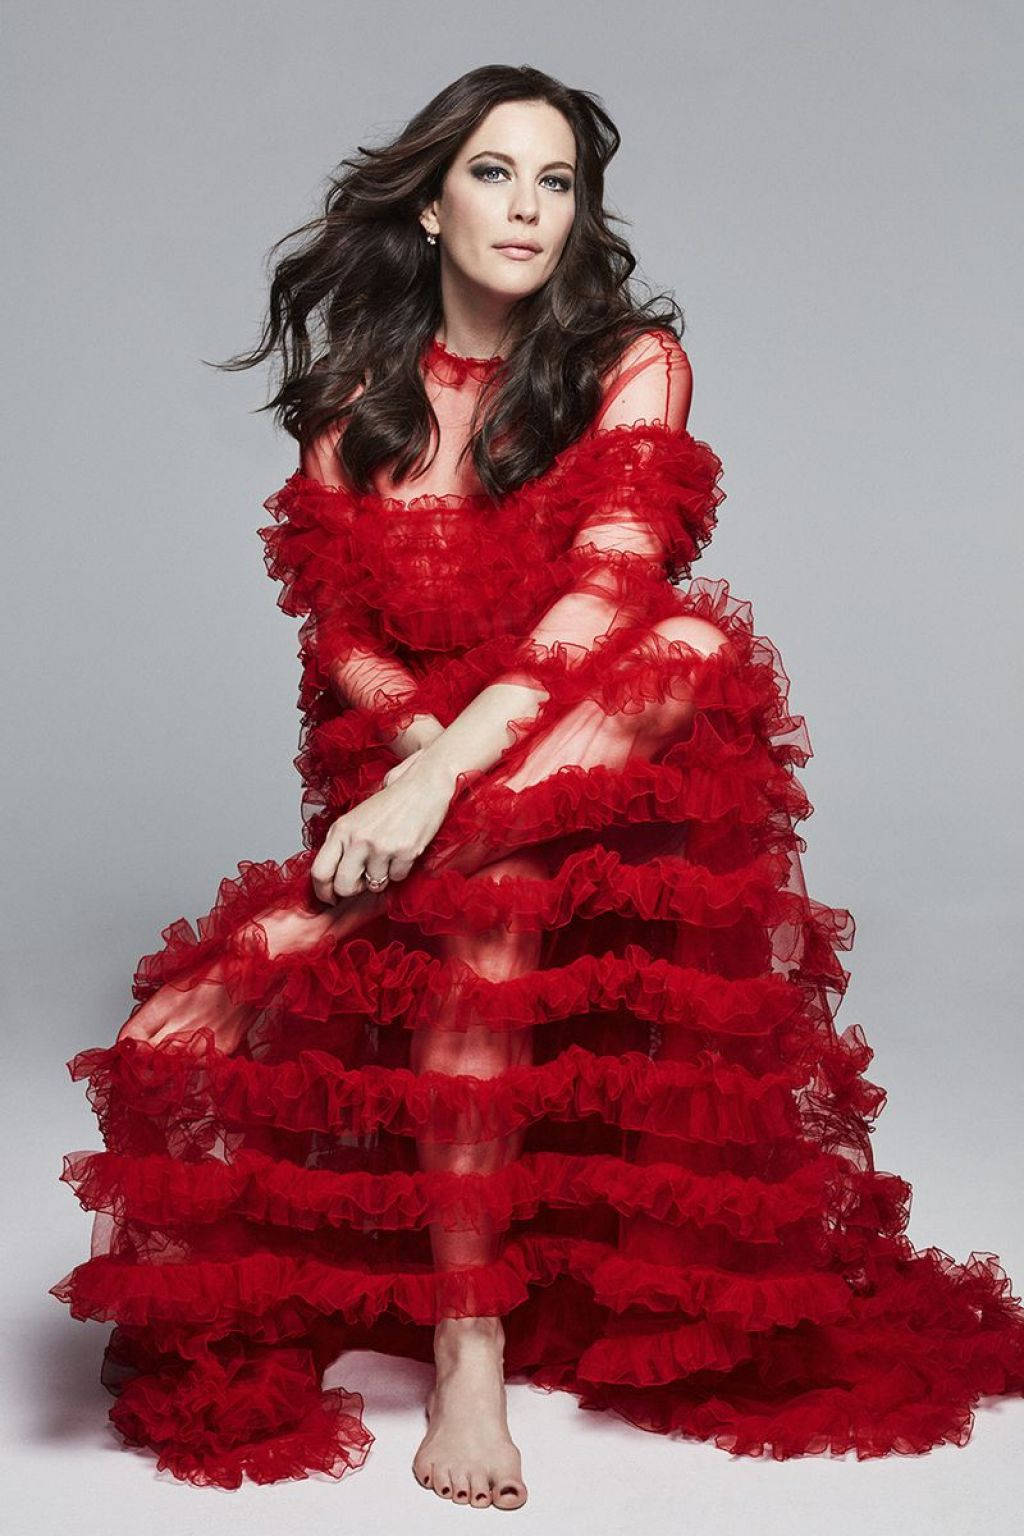 Liv Tyler Red Valentino Tulle Dress Wallpaper